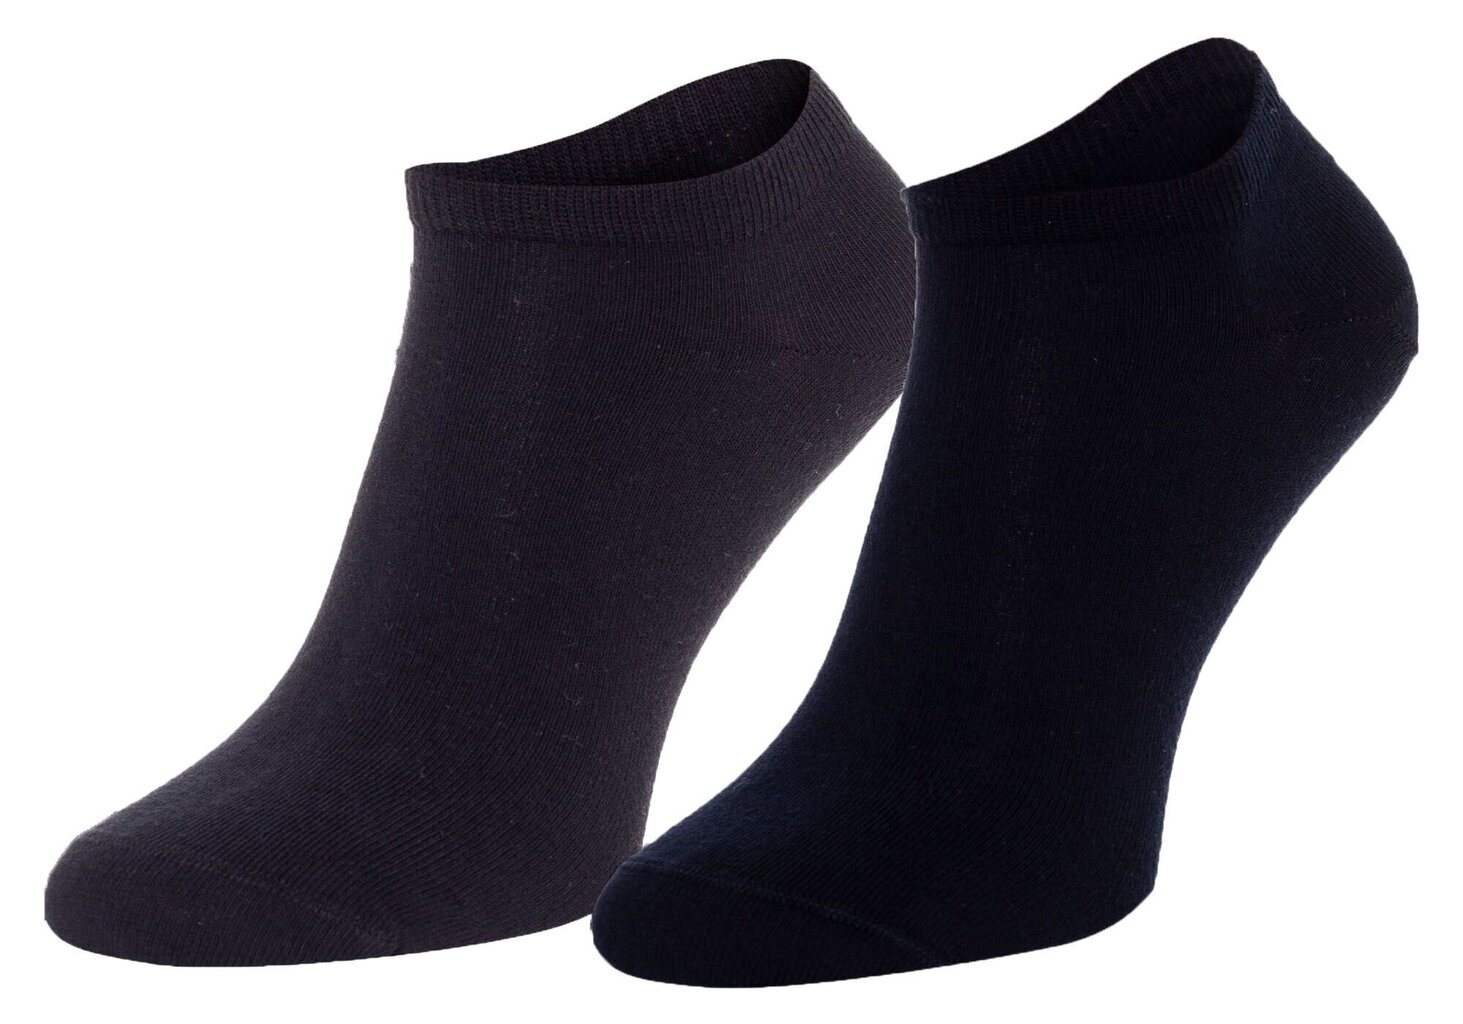 Vyriškos kojinės Tommy hilfiger, 2 poros, tamsiai mėlynos/ juodos 40949 kaina ir informacija | Vyriškos kojinės | pigu.lt